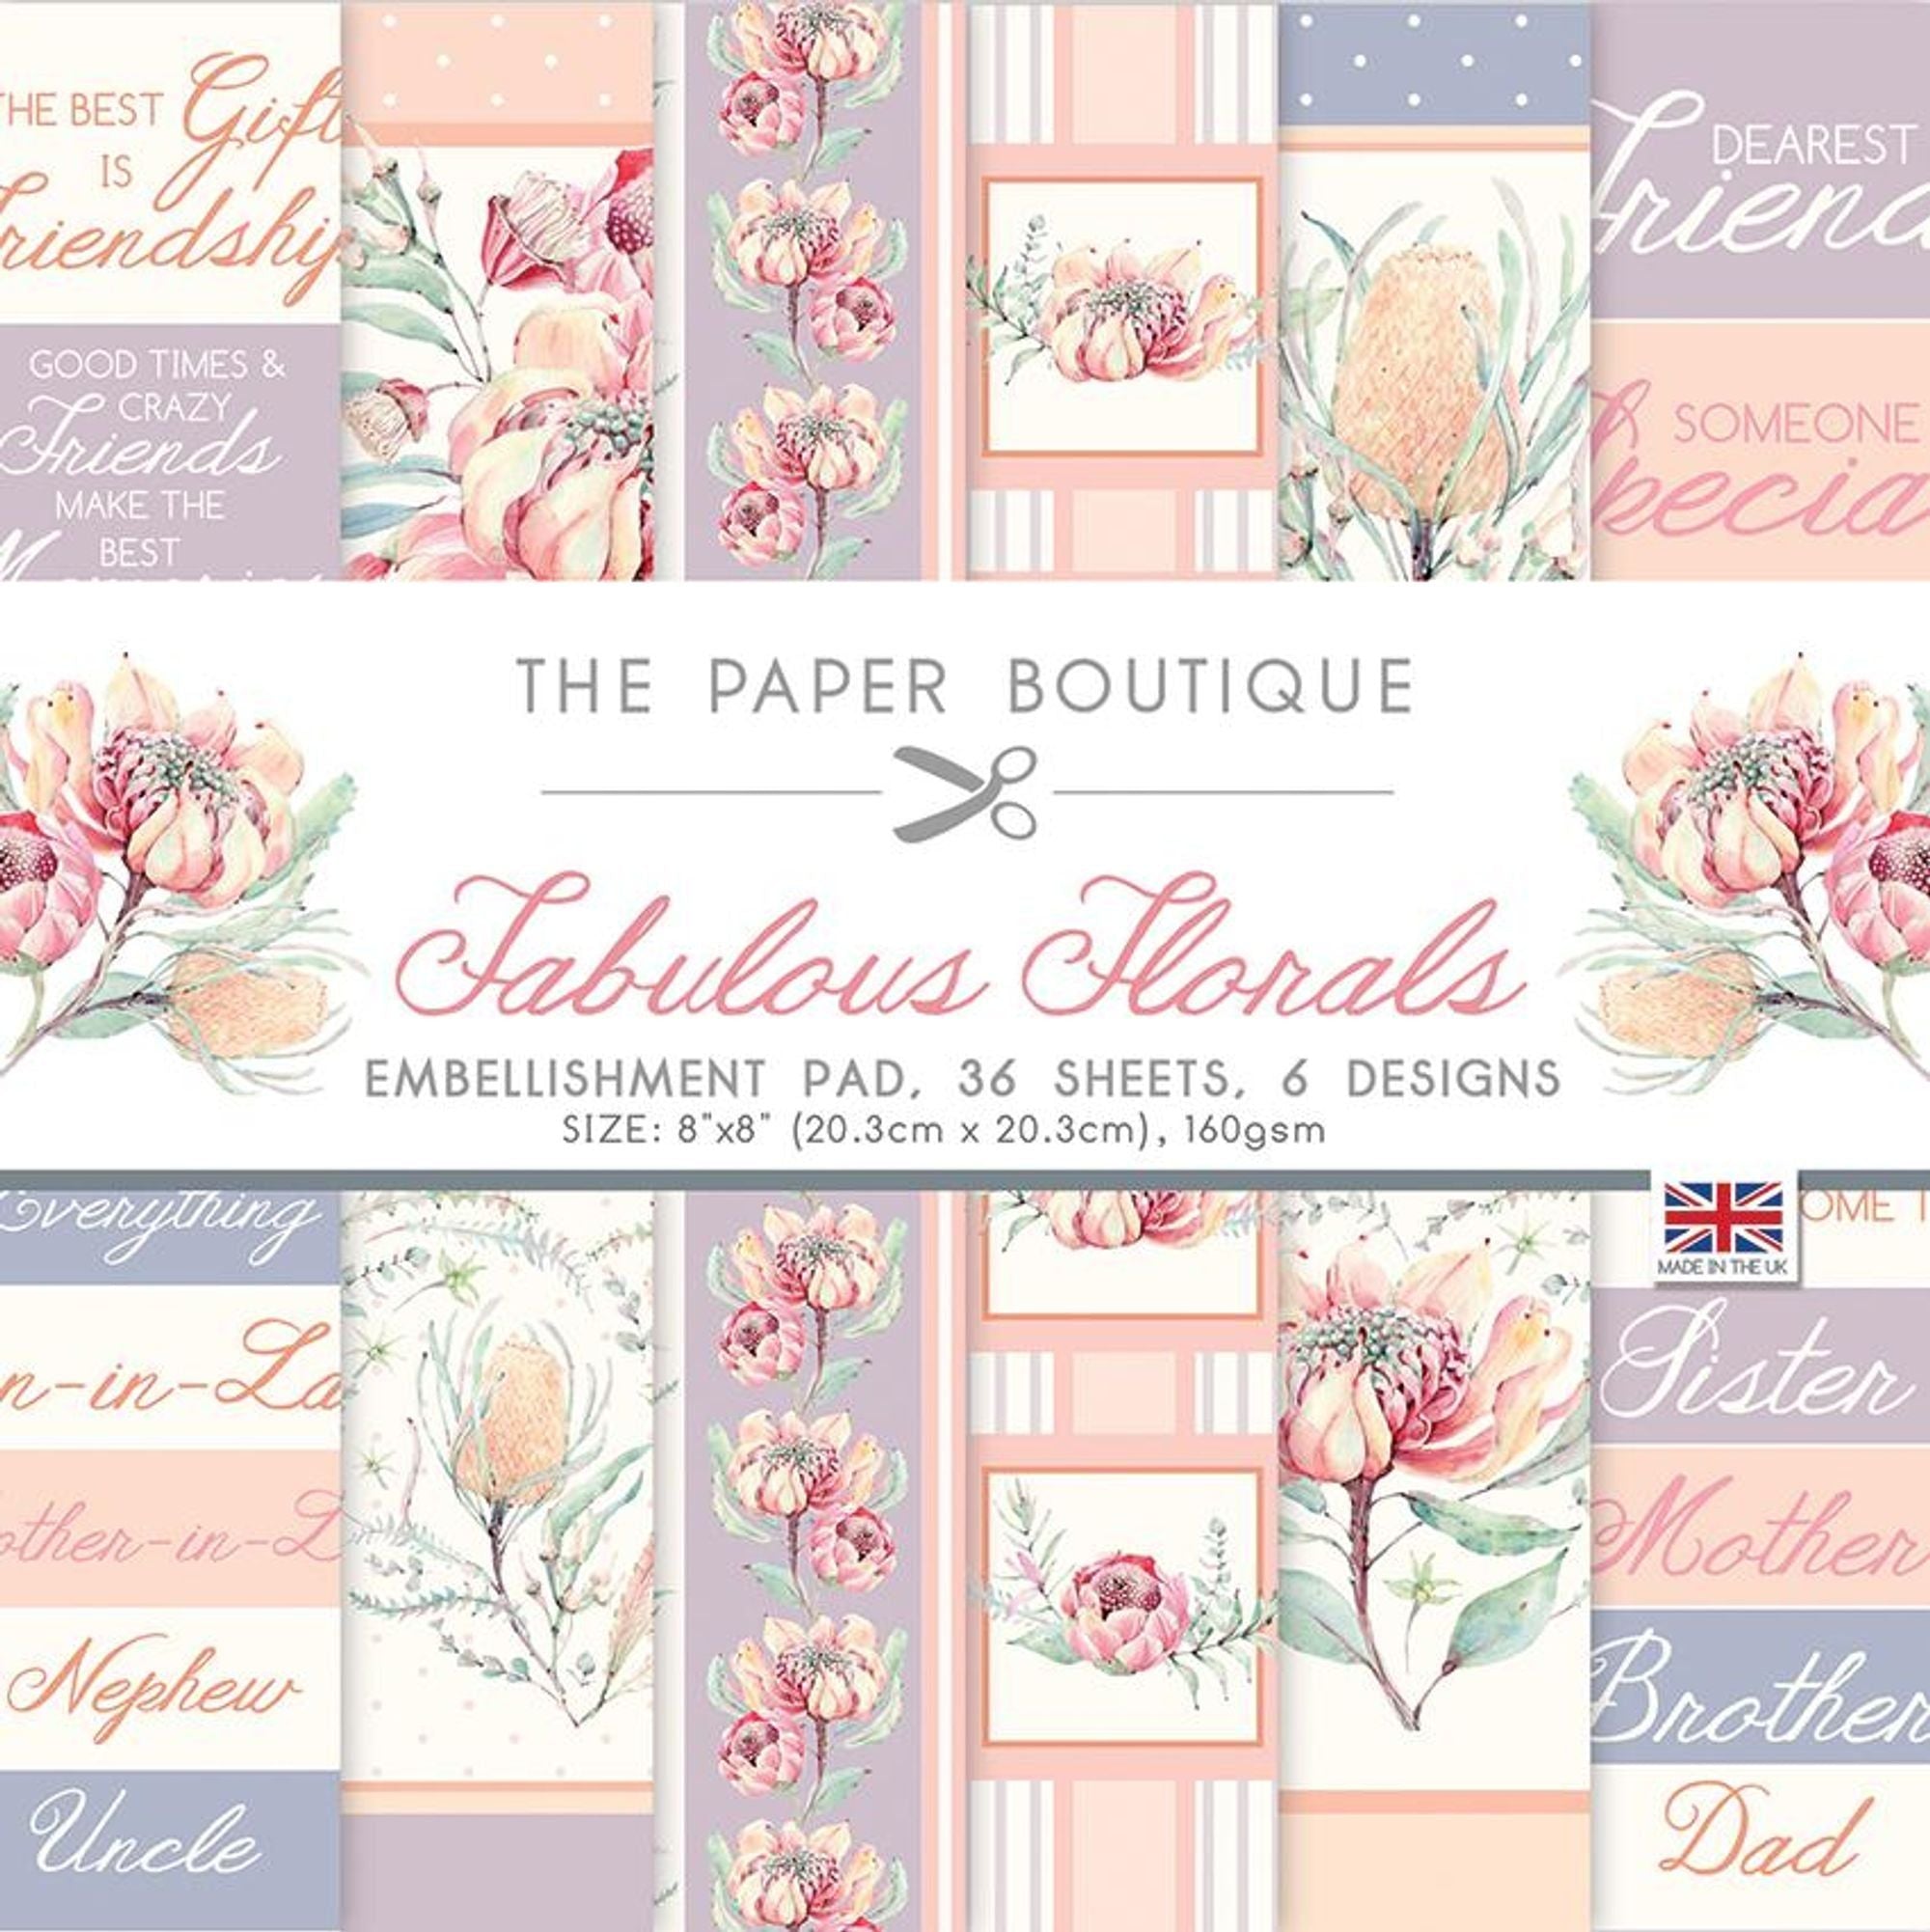 The Paper Boutique Fabulous Florals 8x8 Embellishments Pad